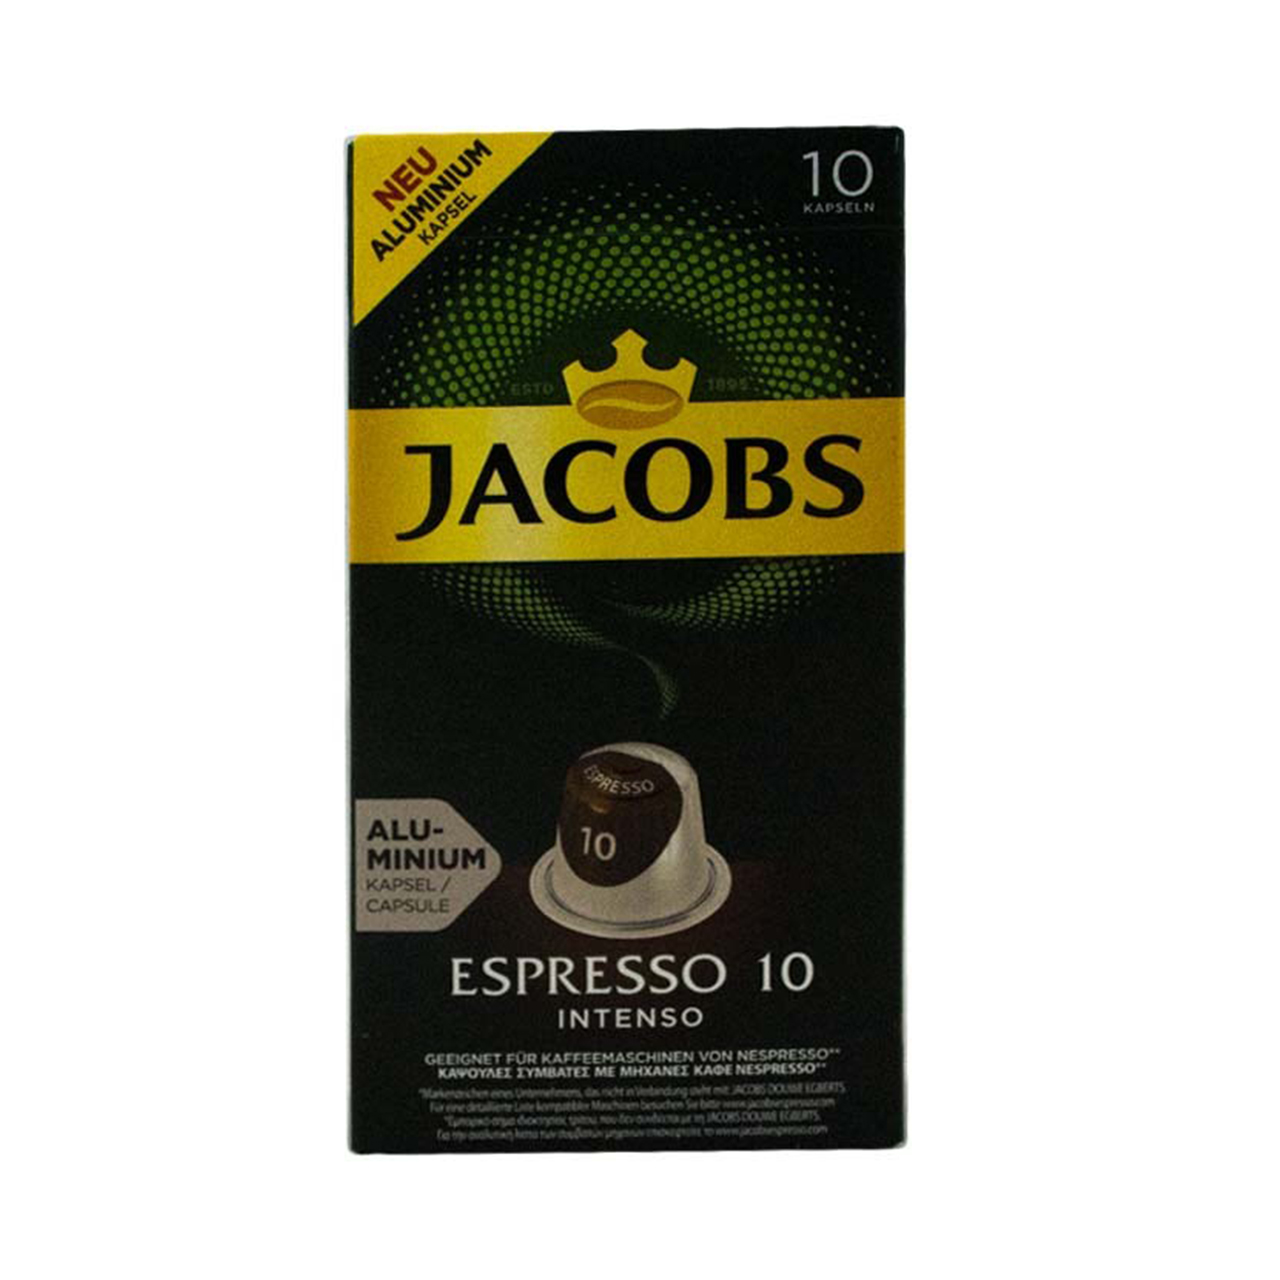 کپسول قهوه جاکوبز مدل Espresso Intenso بسته 10 عددی